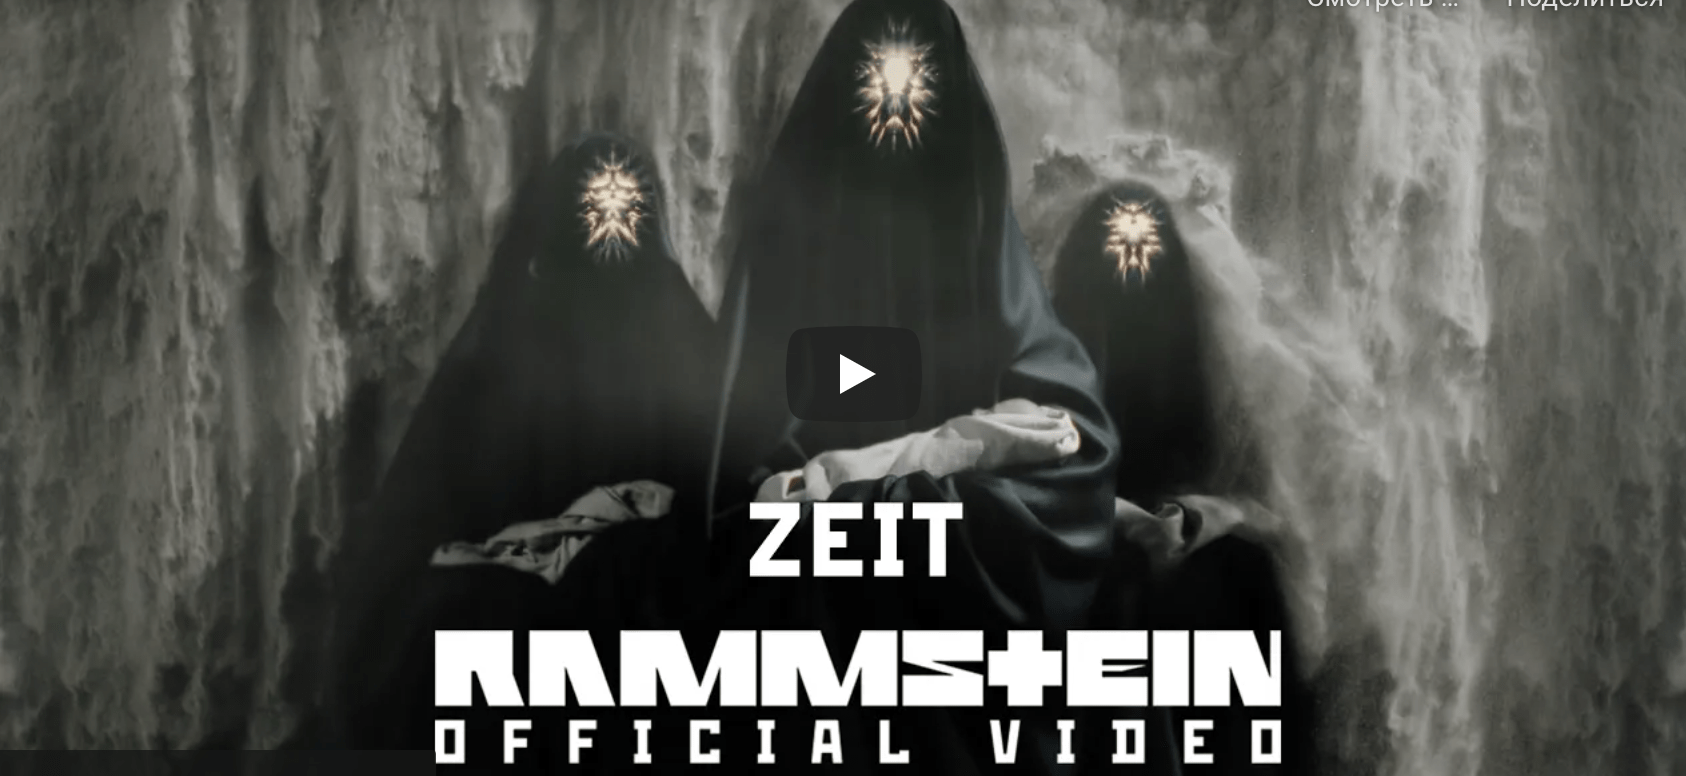 Порно Клип Группы Rammstein